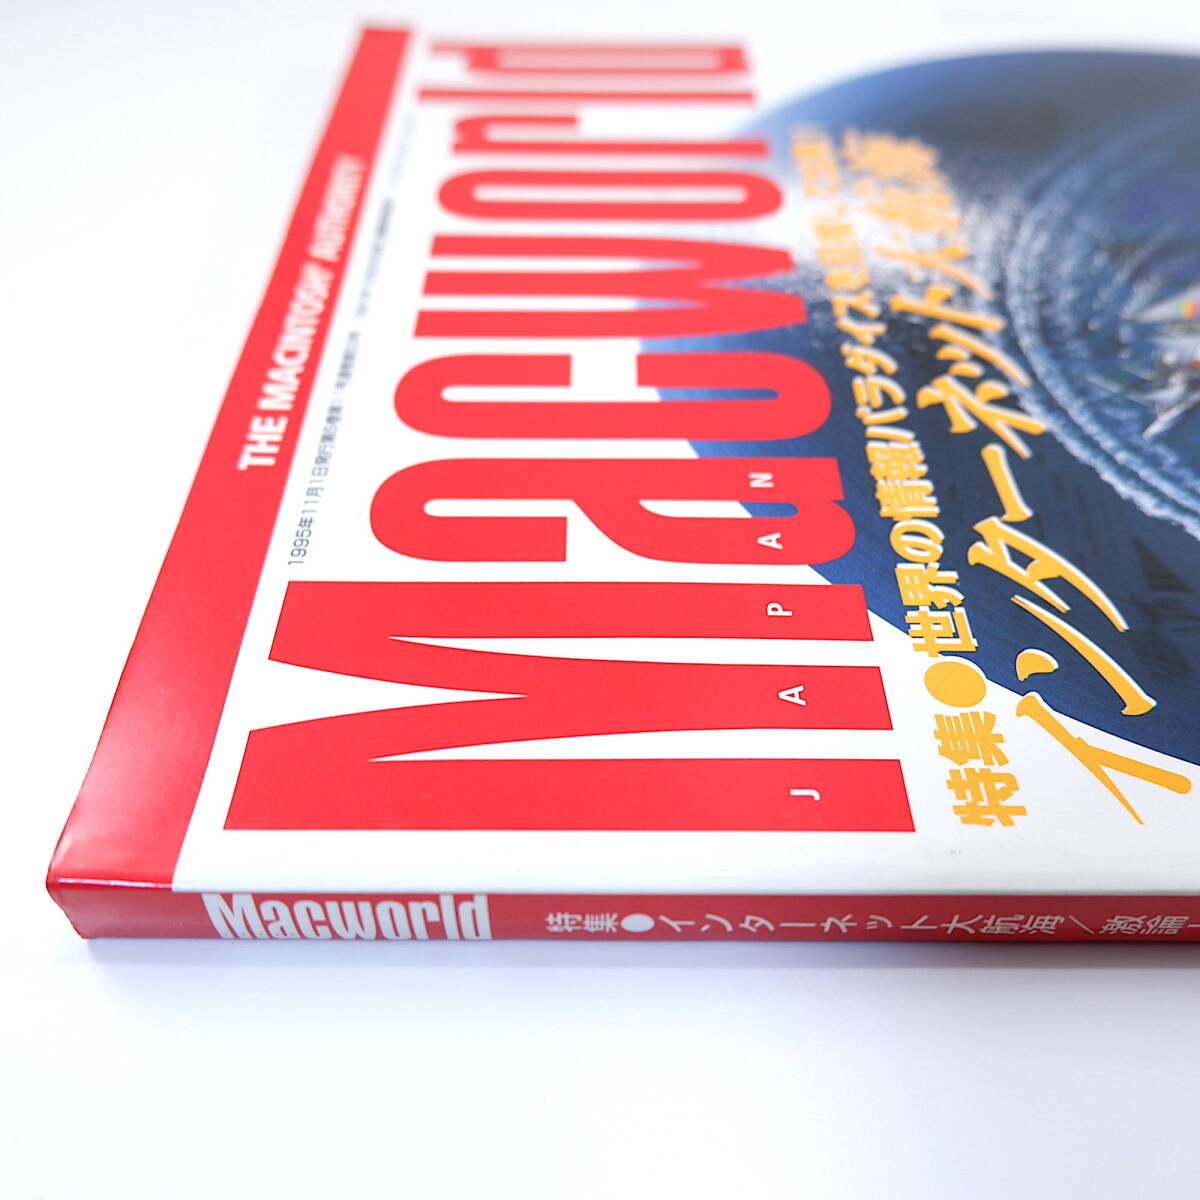 Macworld 1995 год 11 месяц номер * интернет большой . море / используя . нет ./ рекомендация домашняя страница ультра теория / Apple ., глаз ....! Mac world 